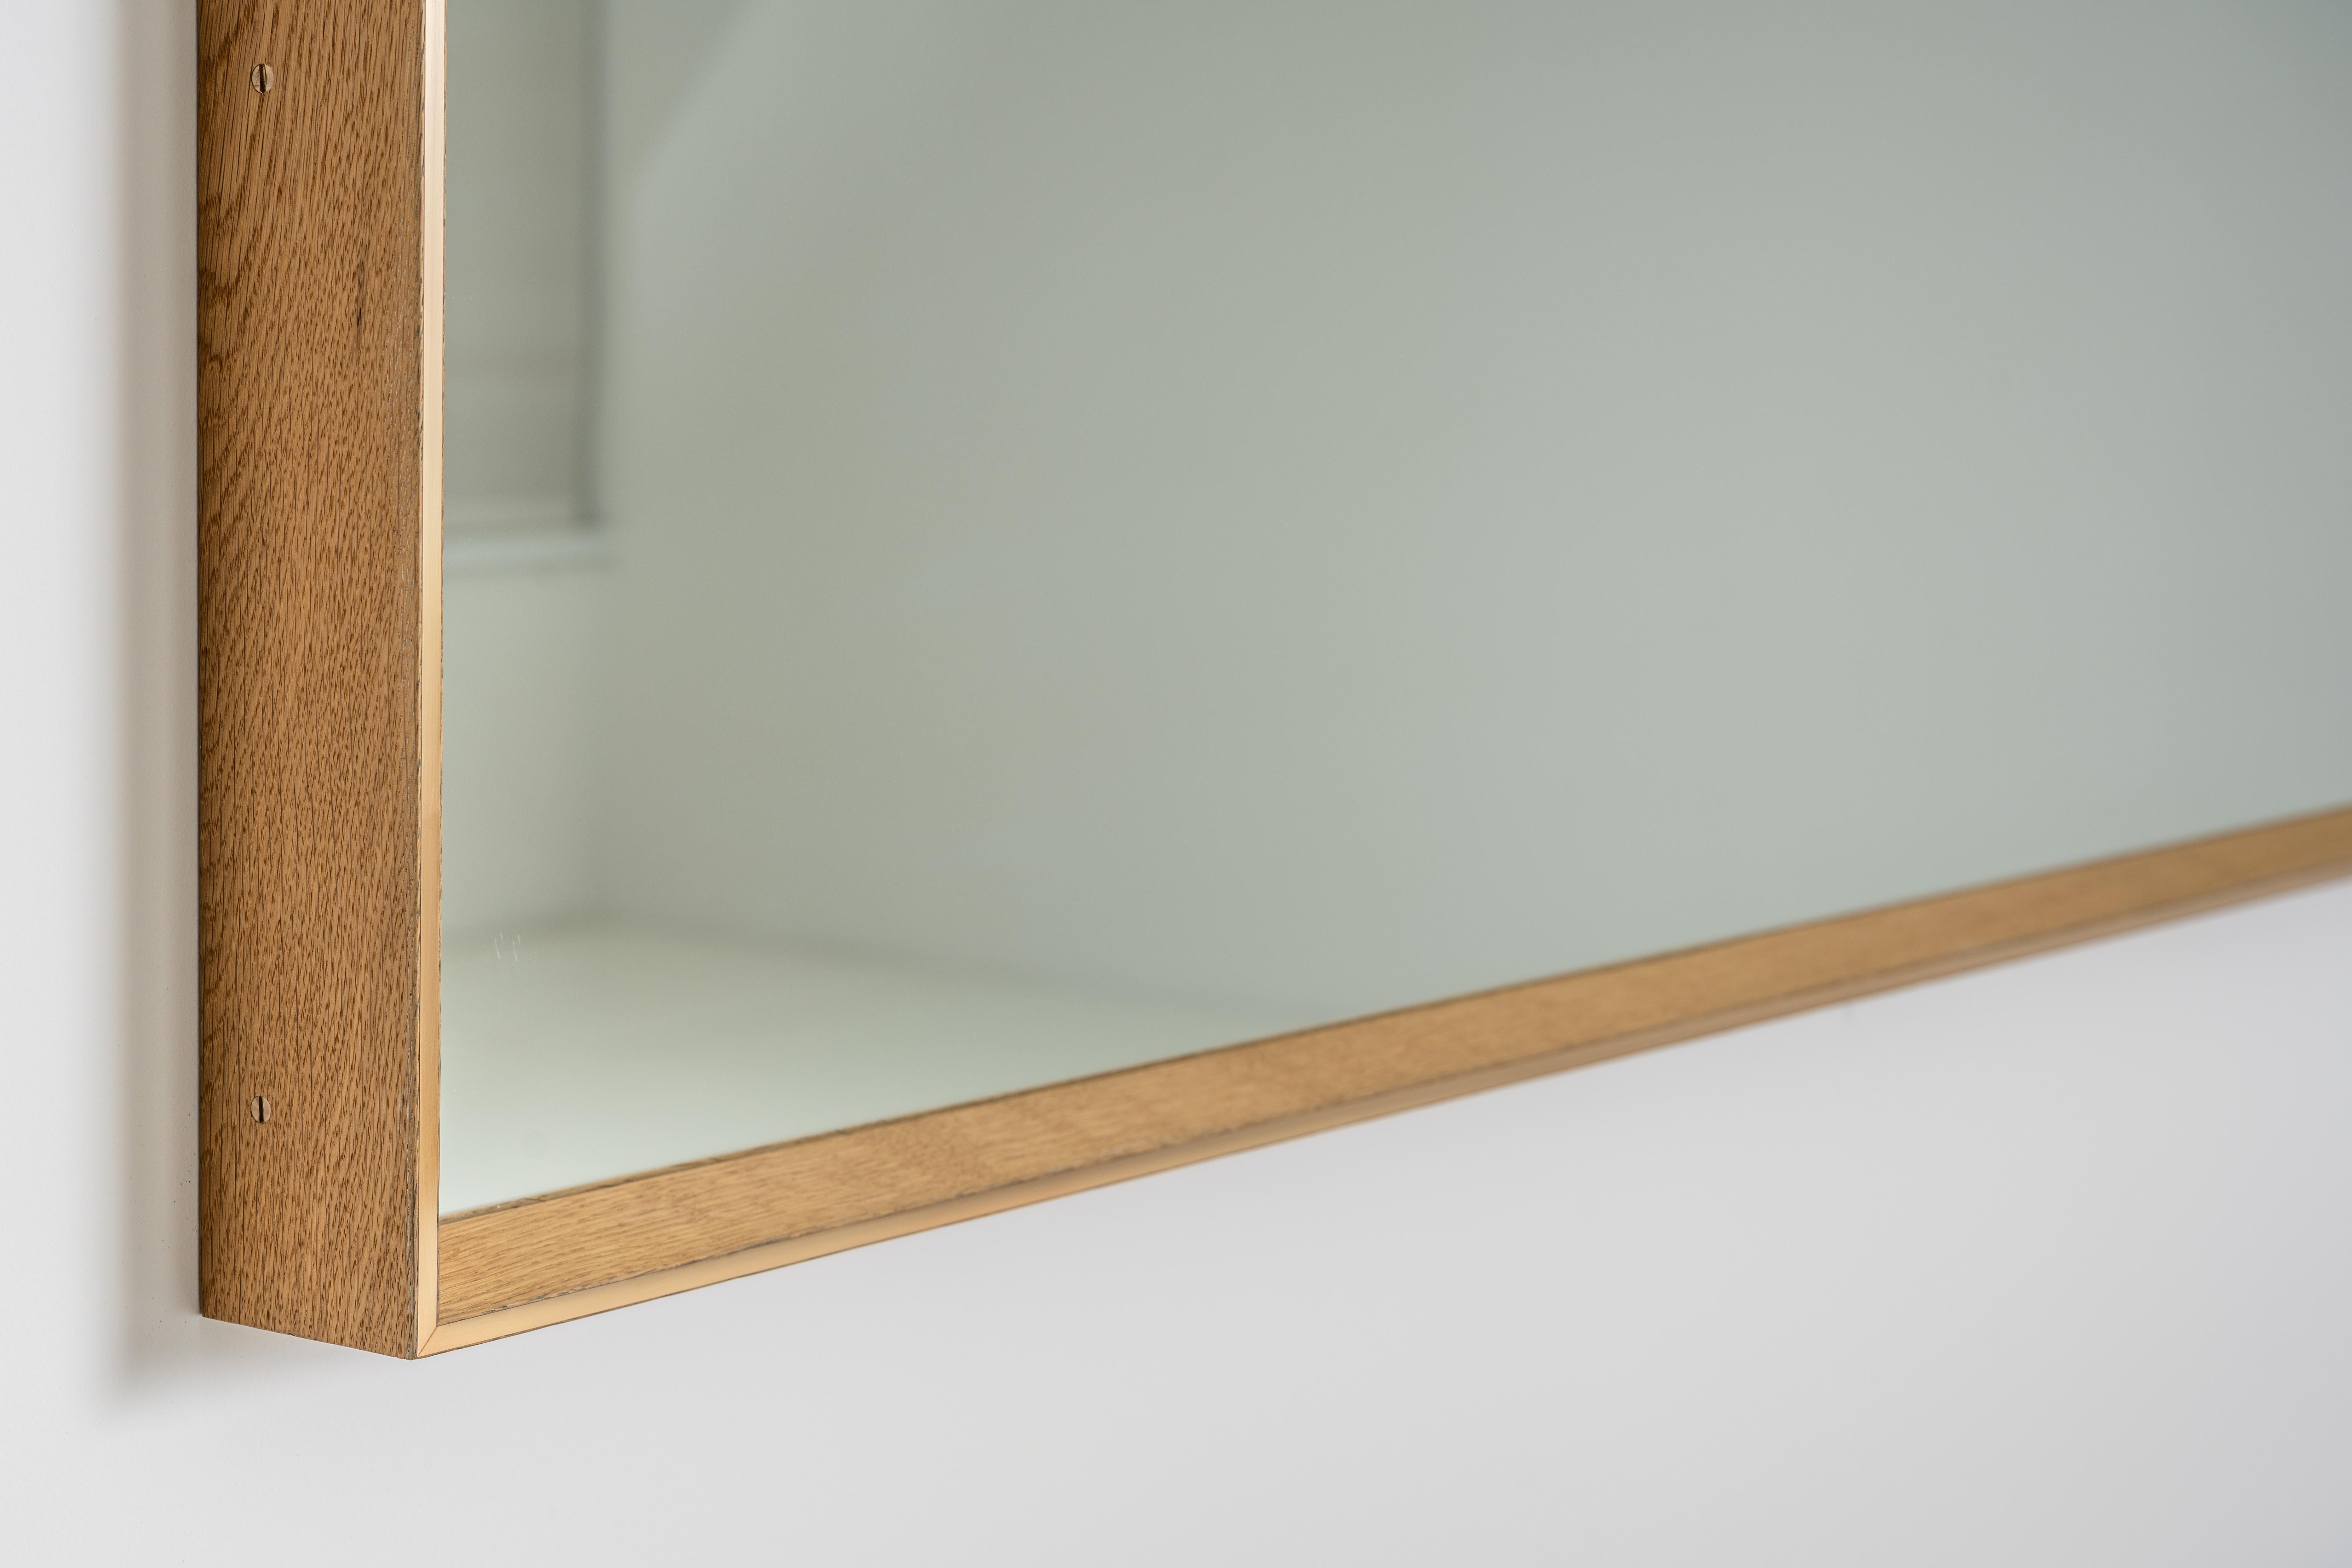 Der Starling-Spiegel ist in Holz gerahmt und mit einer Bronze-Intarsie verziert.

Es handelt sich um ein Naturprodukt, das leichte Unvollkommenheiten aufweisen kann. Das ist das Schöne an diesem Produkt und macht es einzigartig im Vergleich zu